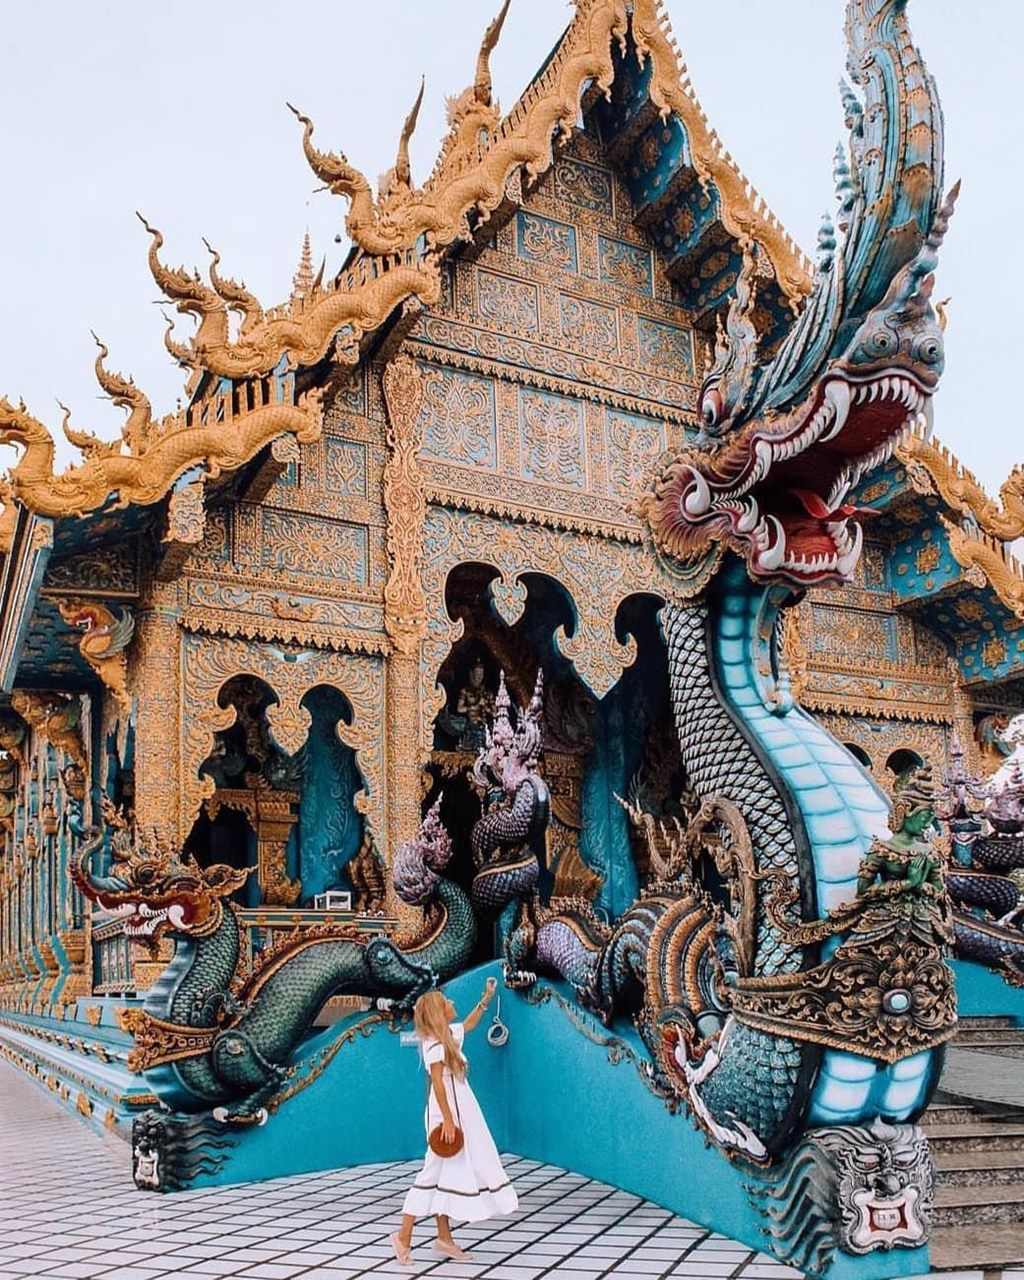 Ngôi chùa Wat Rong Seur Ten là một trong những niềm tự hào của thành phố Chiang Rai hiện lên lộng lẫy với một sắc xanh đậm. Sau ngôi chùa trắng tinh Wat Rong Khun, công trình màu xanh nổi bật này là một trong những điểm đang được rất nhiều Phật tử, du khách người quan tâm và ghé thăm. Ảnh: Sưu tầm.